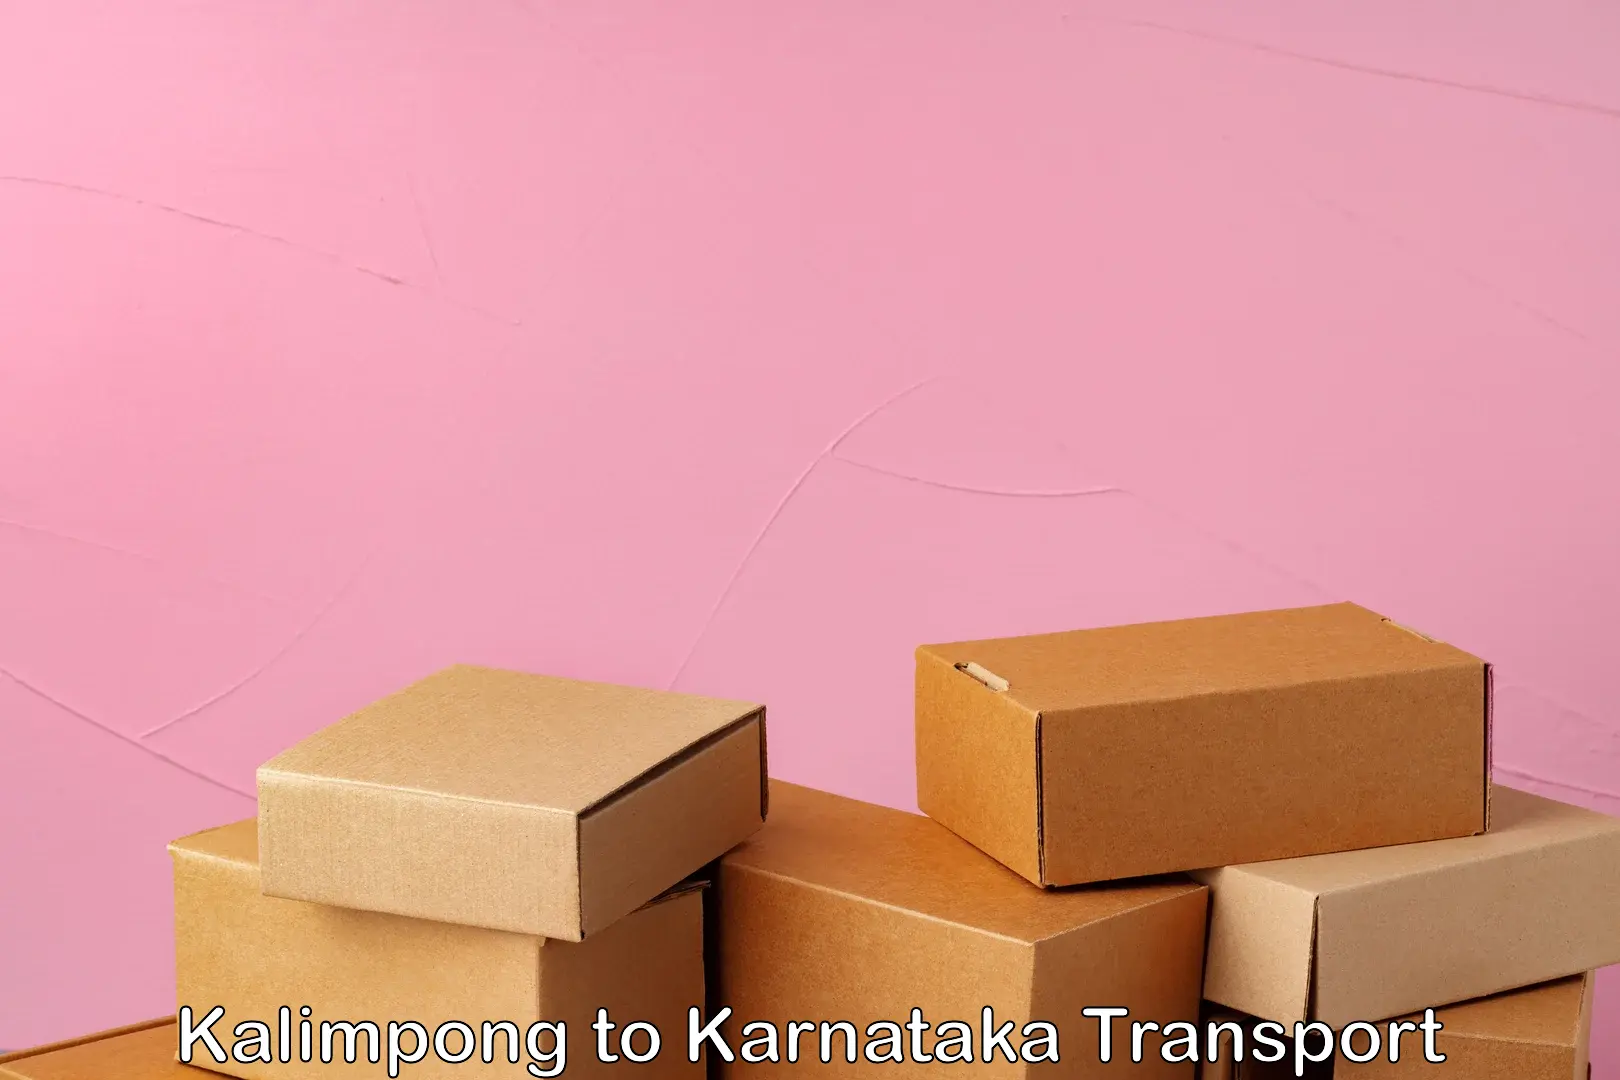 Transport in sharing Kalimpong to Karnataka